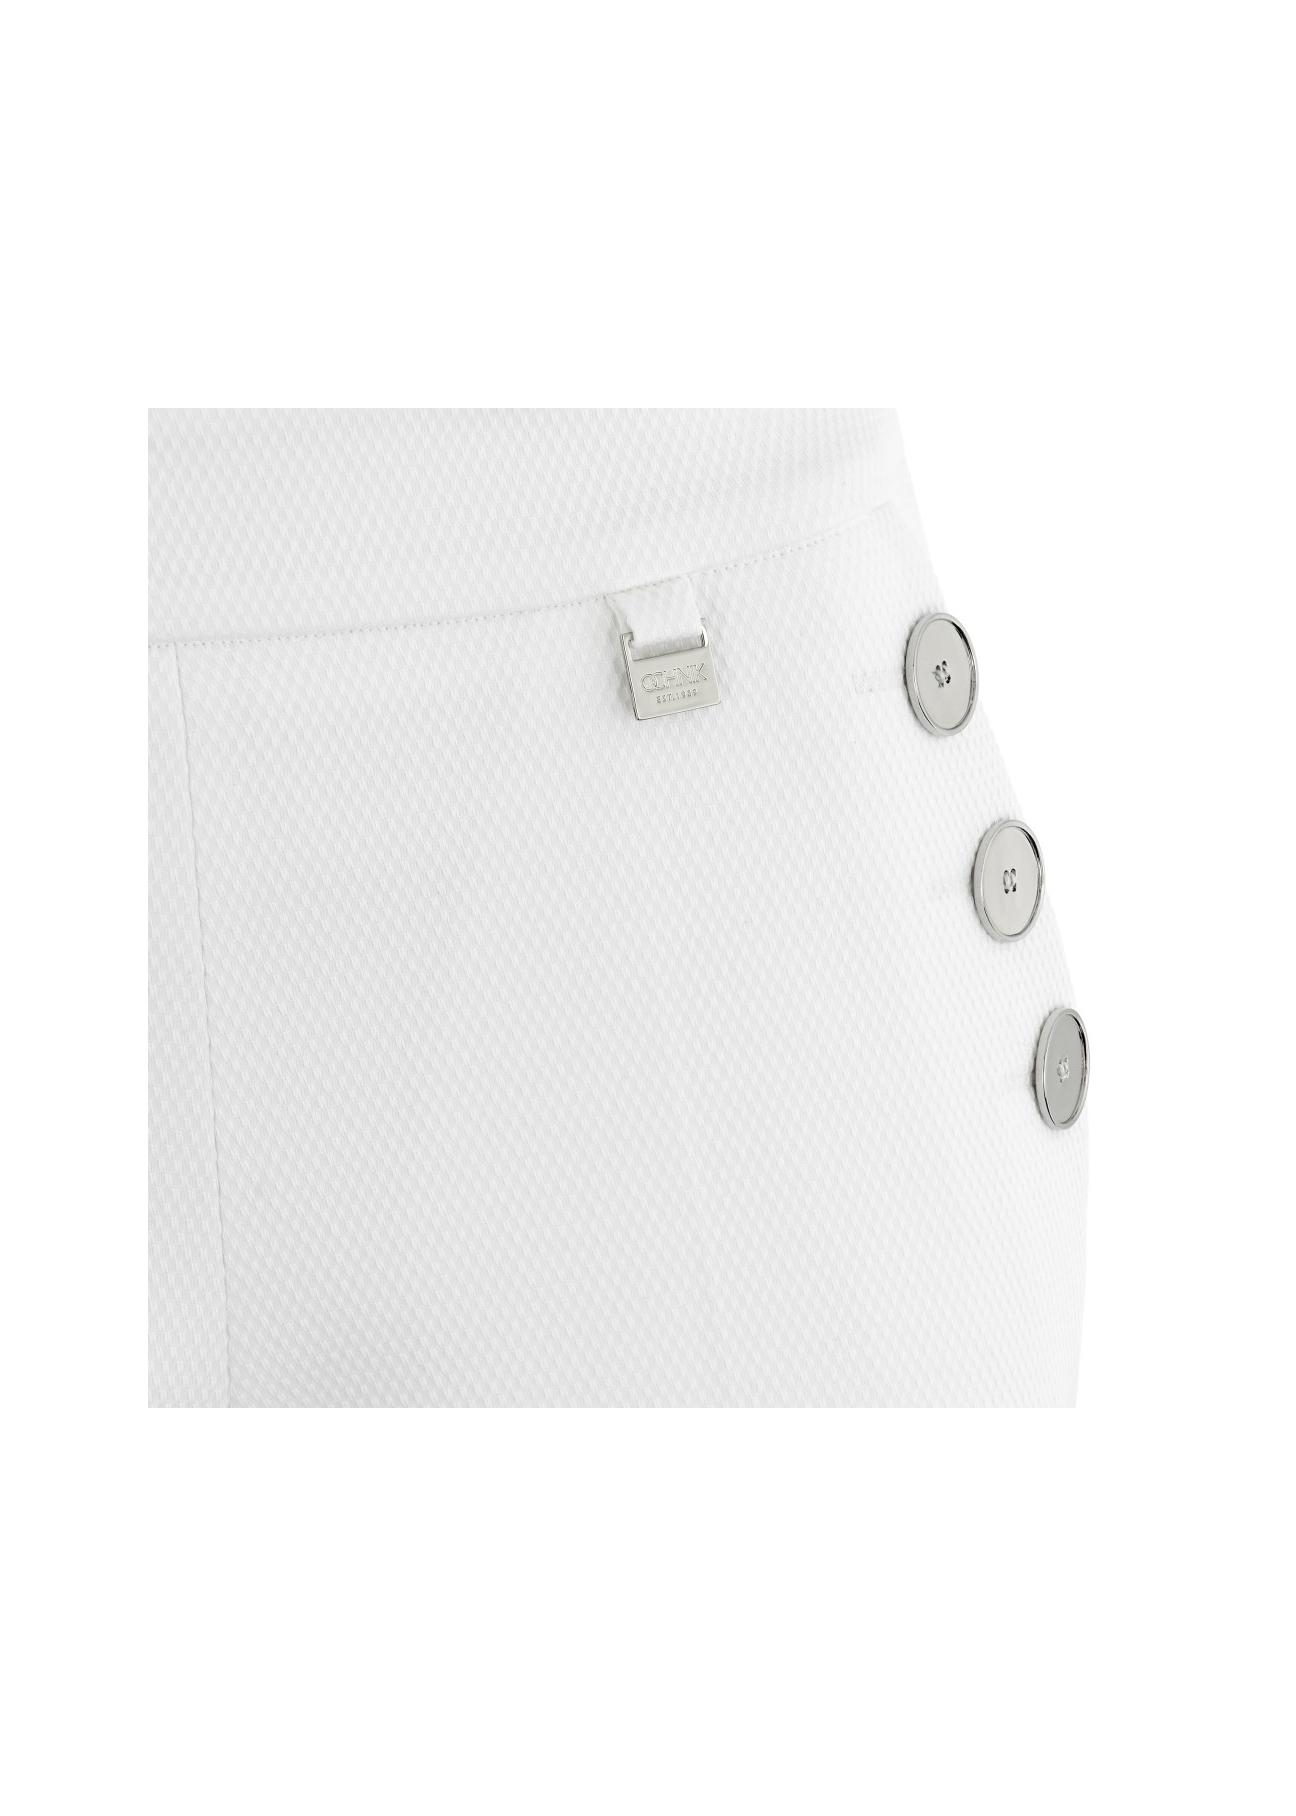 Spodnie damskie SPODT-0015-11(W17)